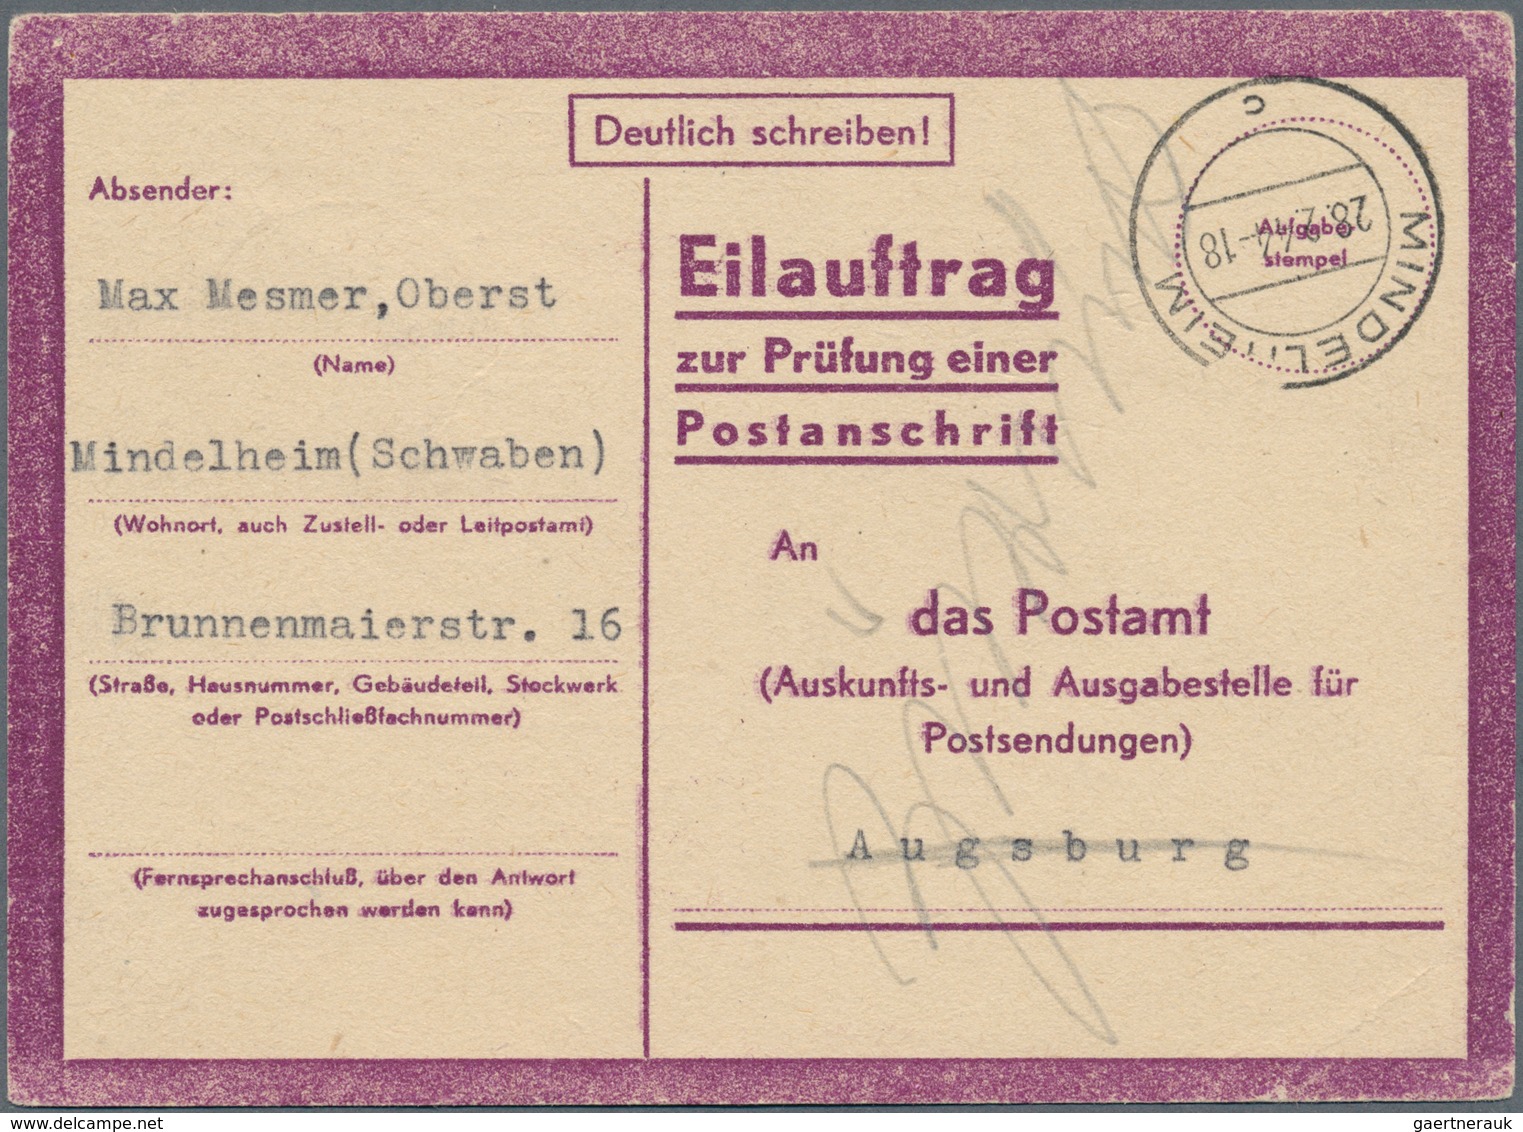 30001 Deutsches Reich: 1850/1945 ca., Deutsches Reich und Bayern, uriger Posten mit wohl über eintausend B